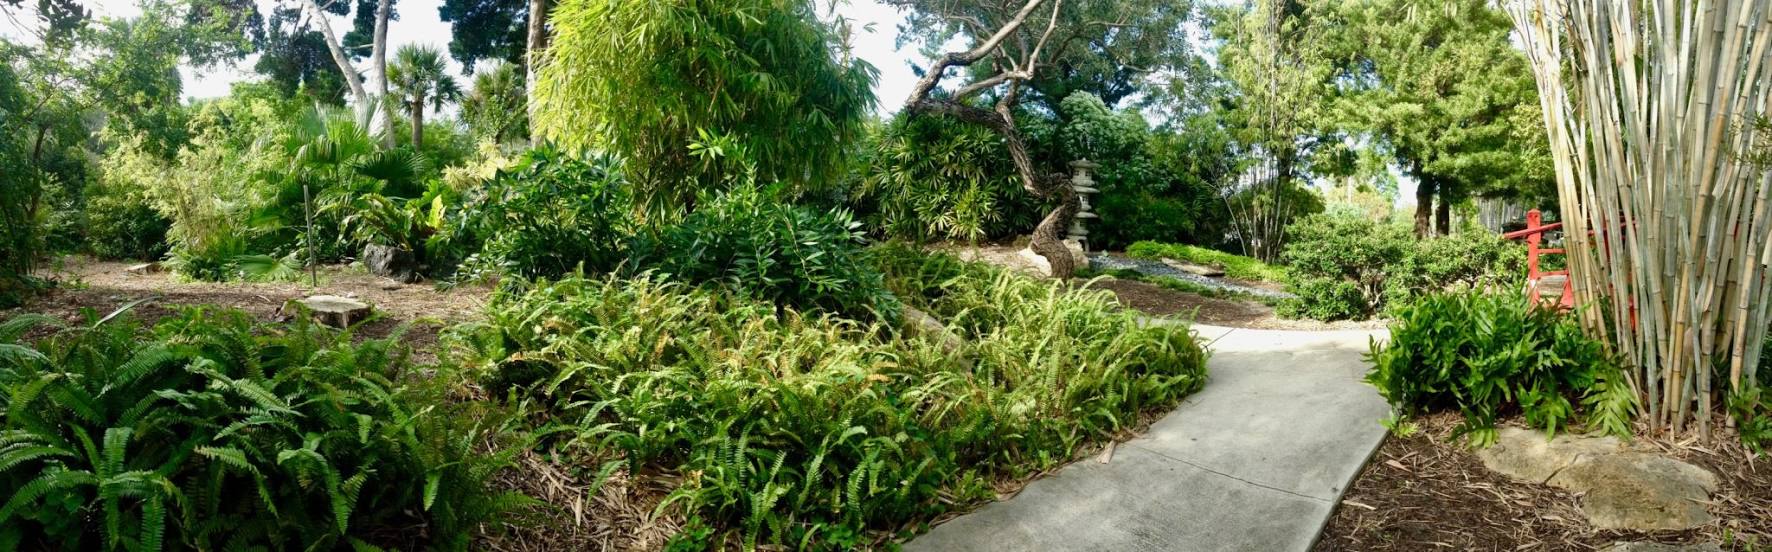 Miami Beach Botanical Garden, 